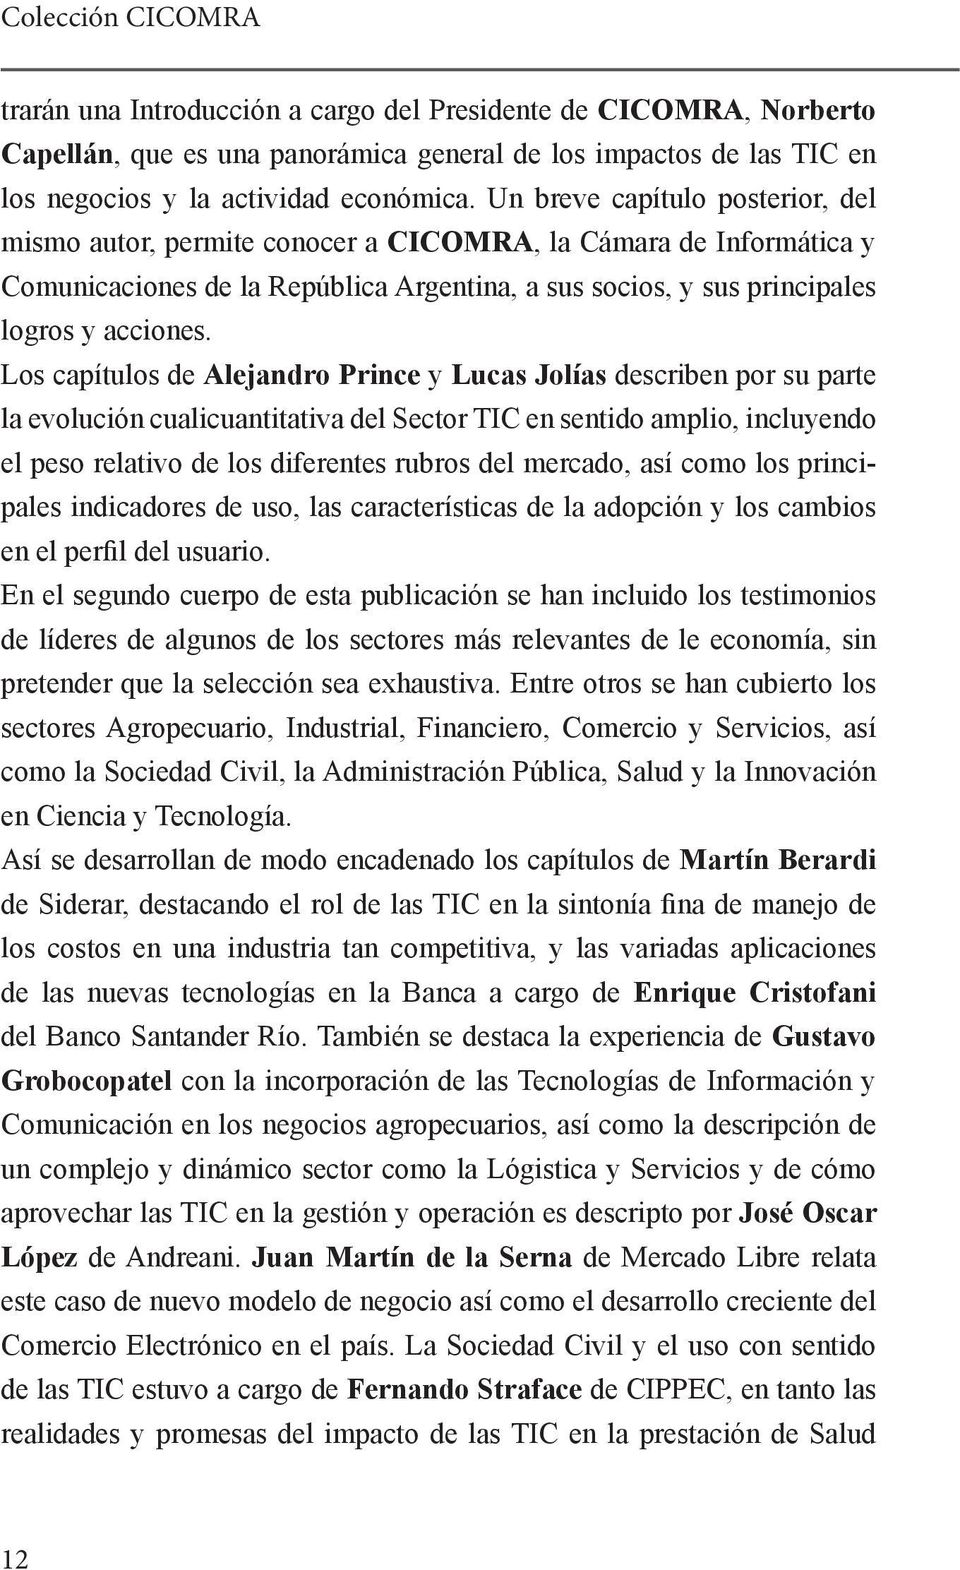 Los capítulos de Alejandro Prince y Lucas Jolías describen por su parte la evolución cualicuantitativa del Sector TIC en sentido amplio, incluyendo el peso relativo de los diferentes rubros del